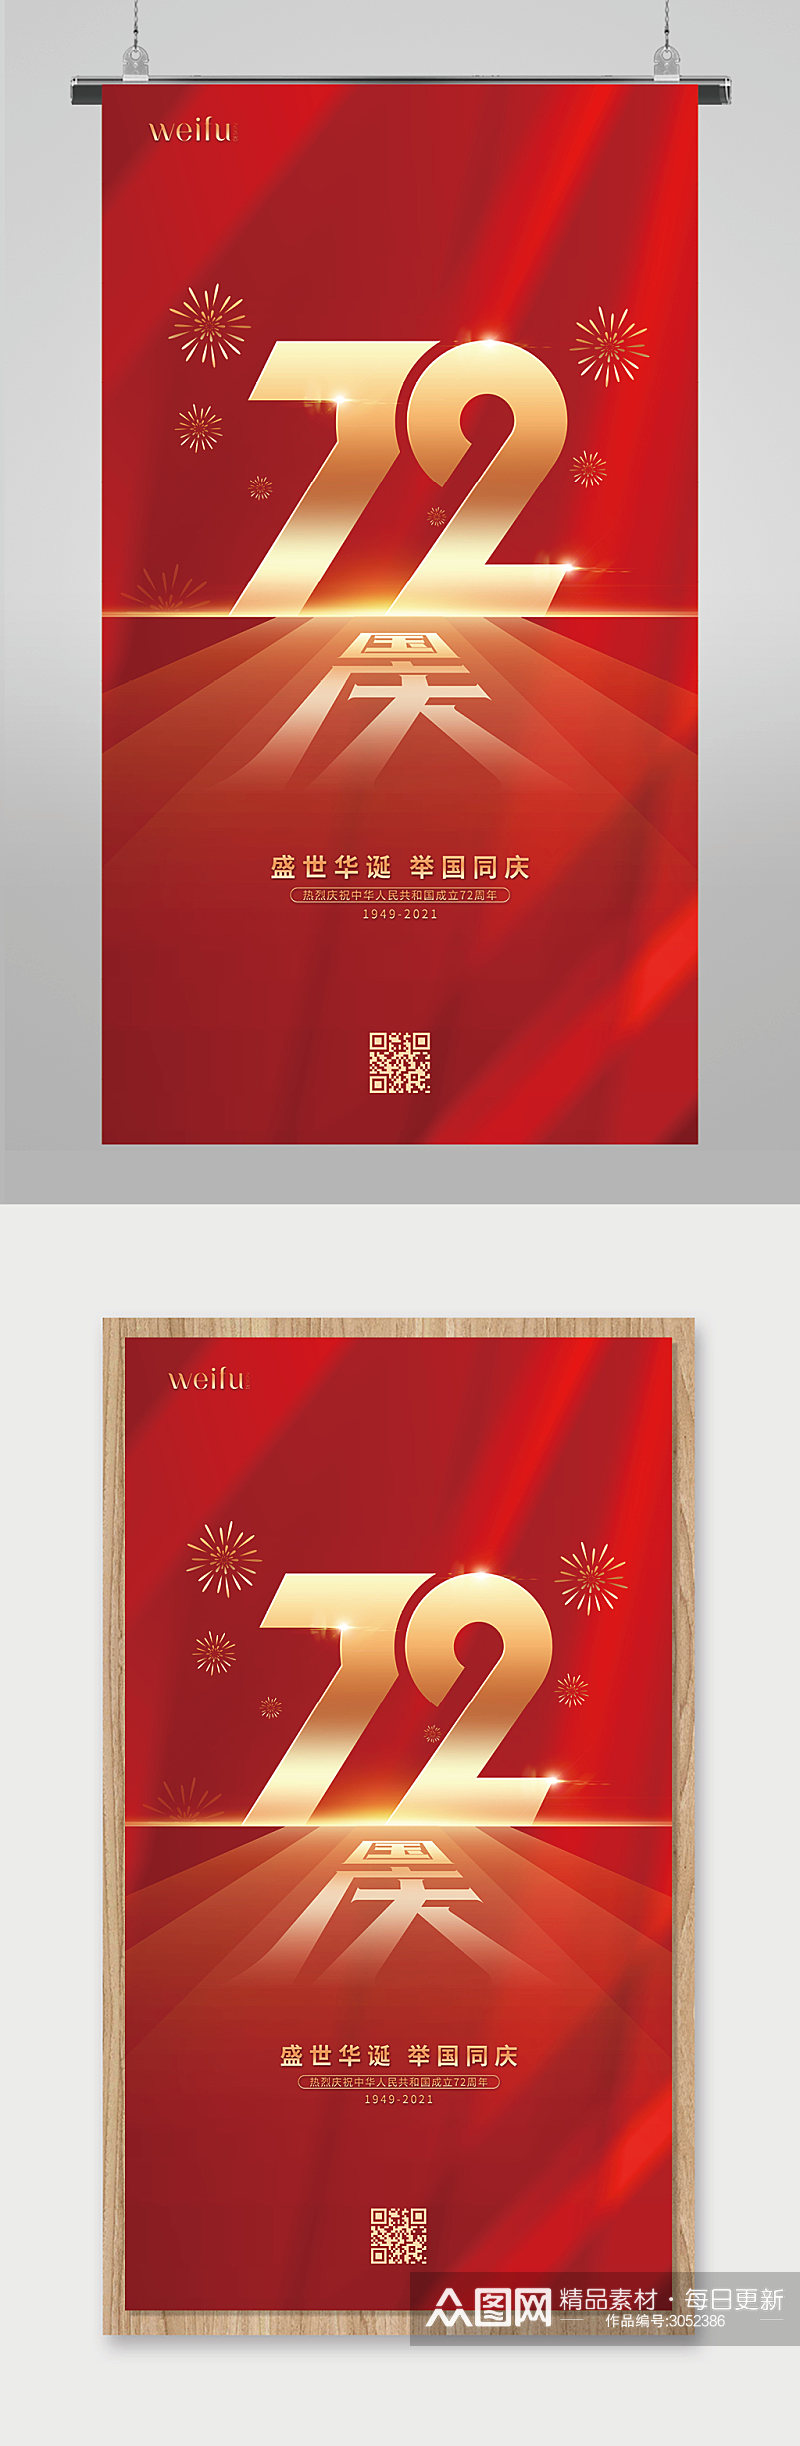 红色大气喜庆国庆节国庆72周年宣传海报素材